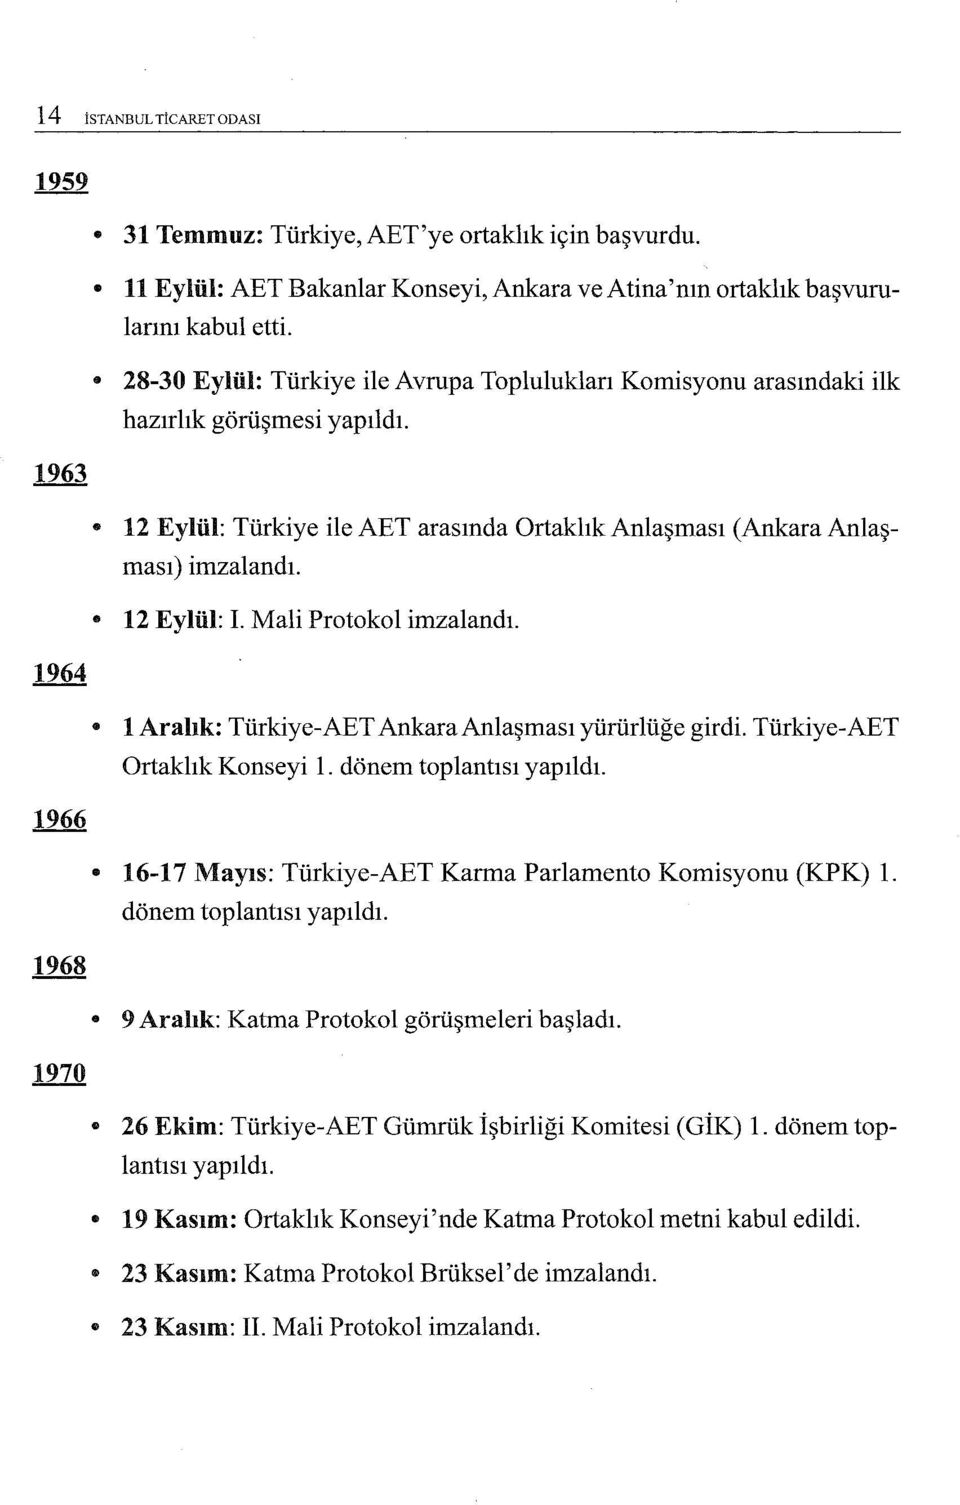 Mali Protokol imzalandı. 1 Aralık: Türkiye-AET AnkaraAnlaşması yürürlüğe girdi. Türkiye-AET Ortaklık Konseyi ı. dönem toplantısı yapıldı. 16-17 Mayıs: Türkiye-AET Karma Parlamento Komisyonu (KPK) 1.